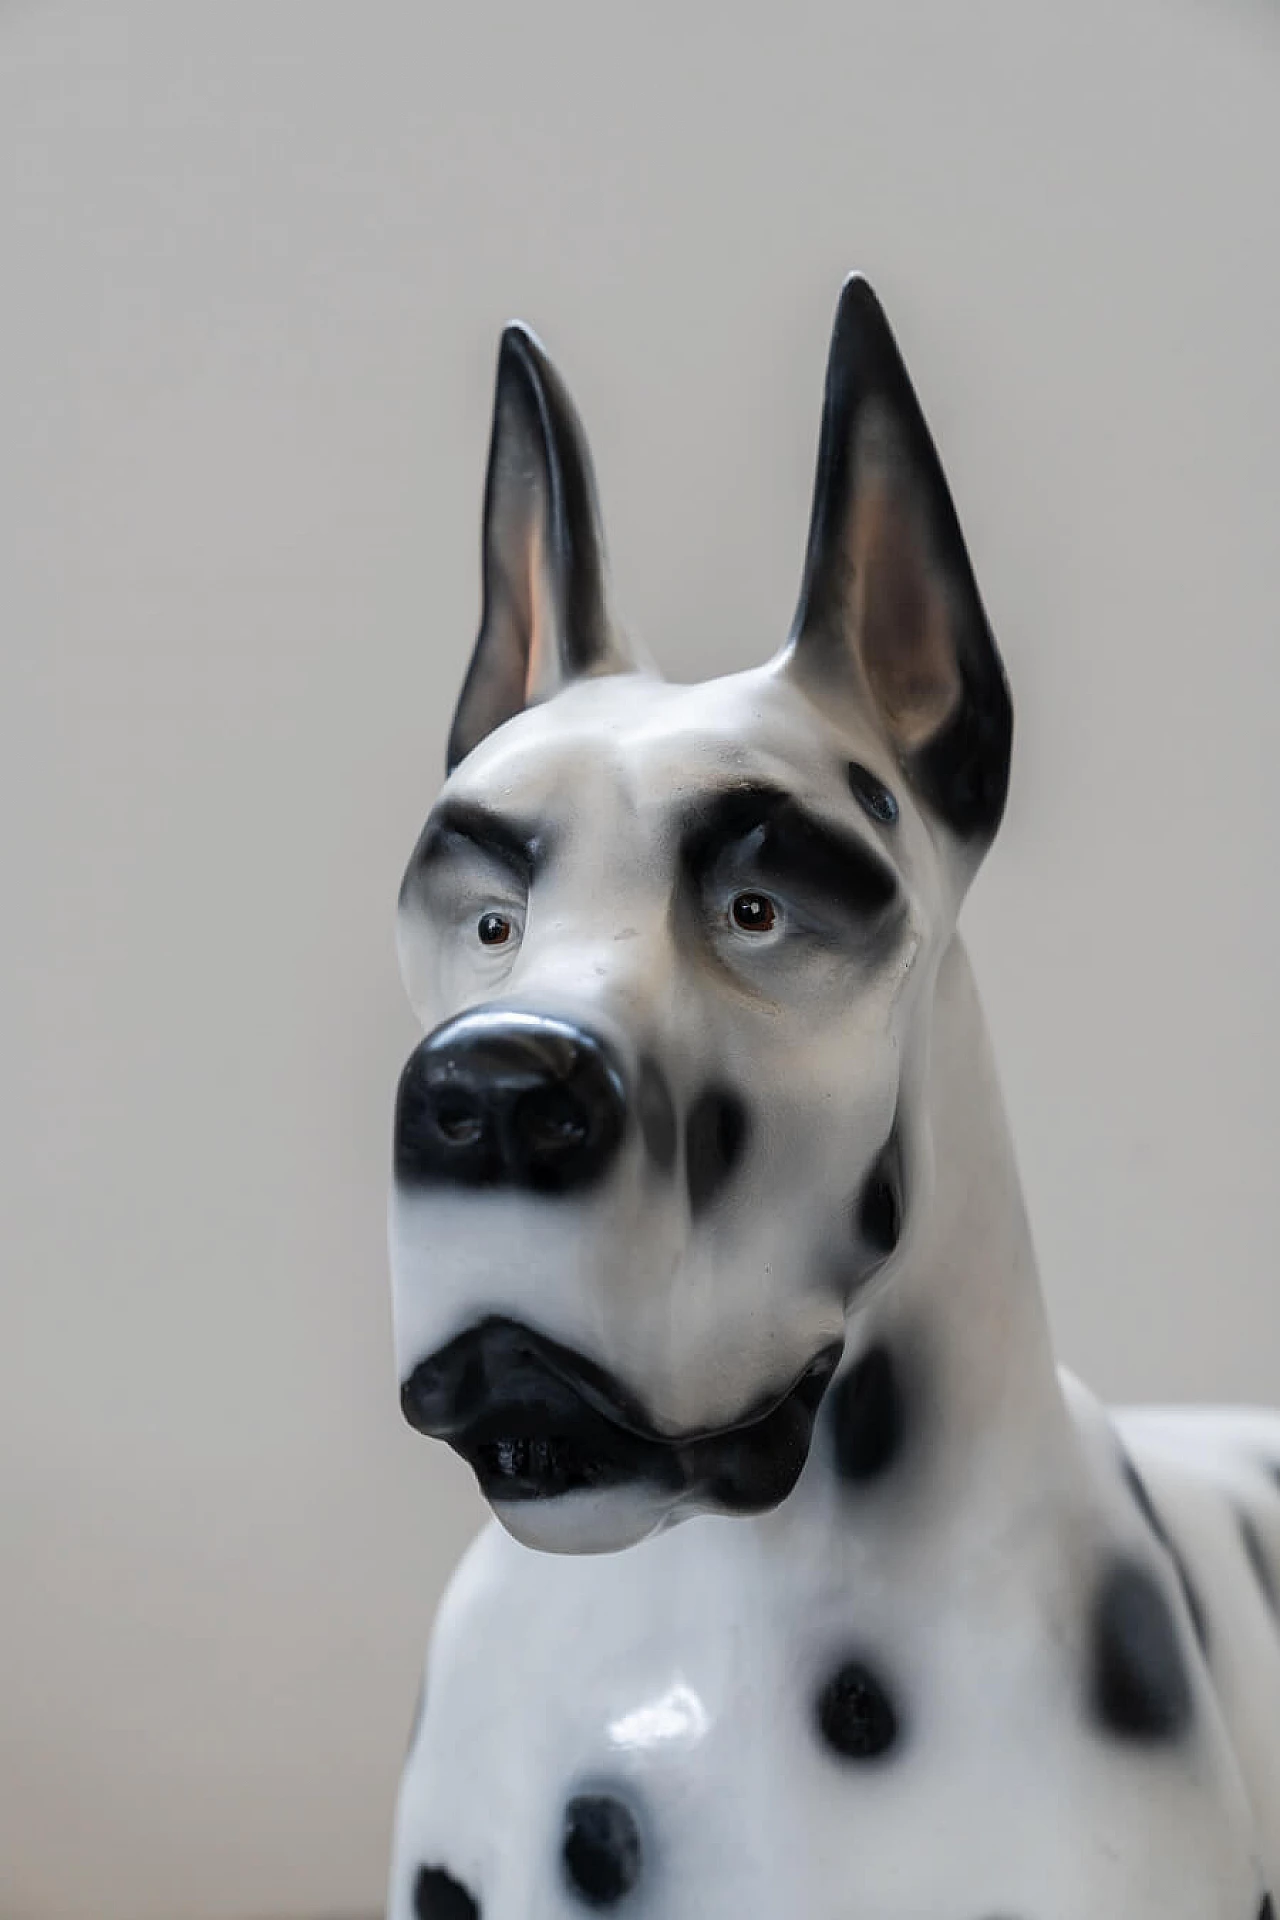 Resin sculpture of Dalmatian dog, 1970s 1374988